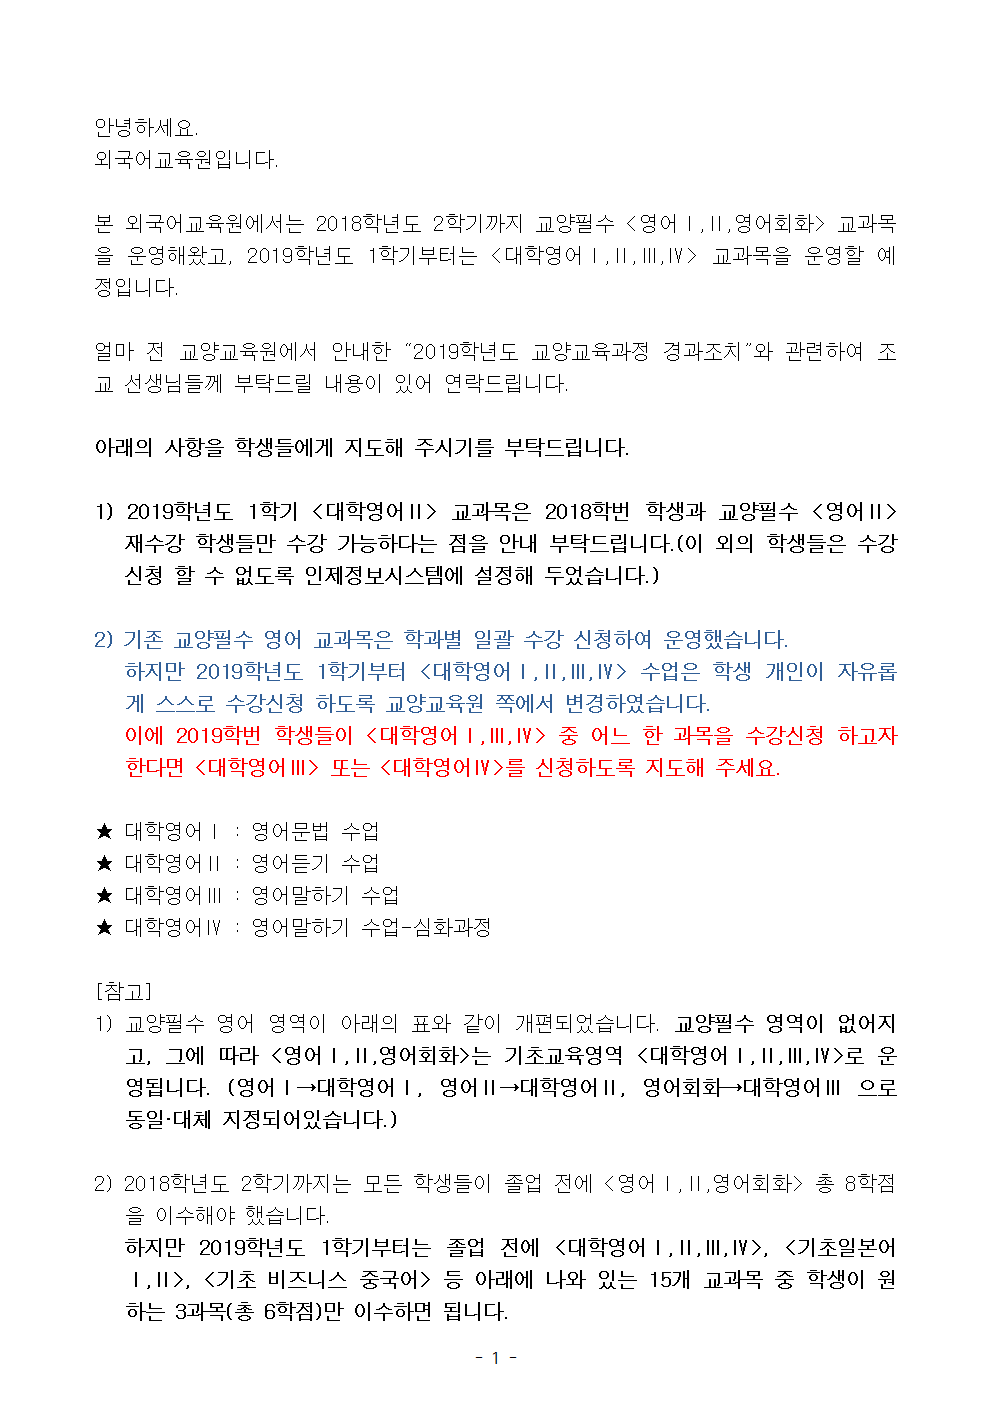 2019-1-대학영어Ⅲ,Ⅳ수강안내(학과 회람용)001.png